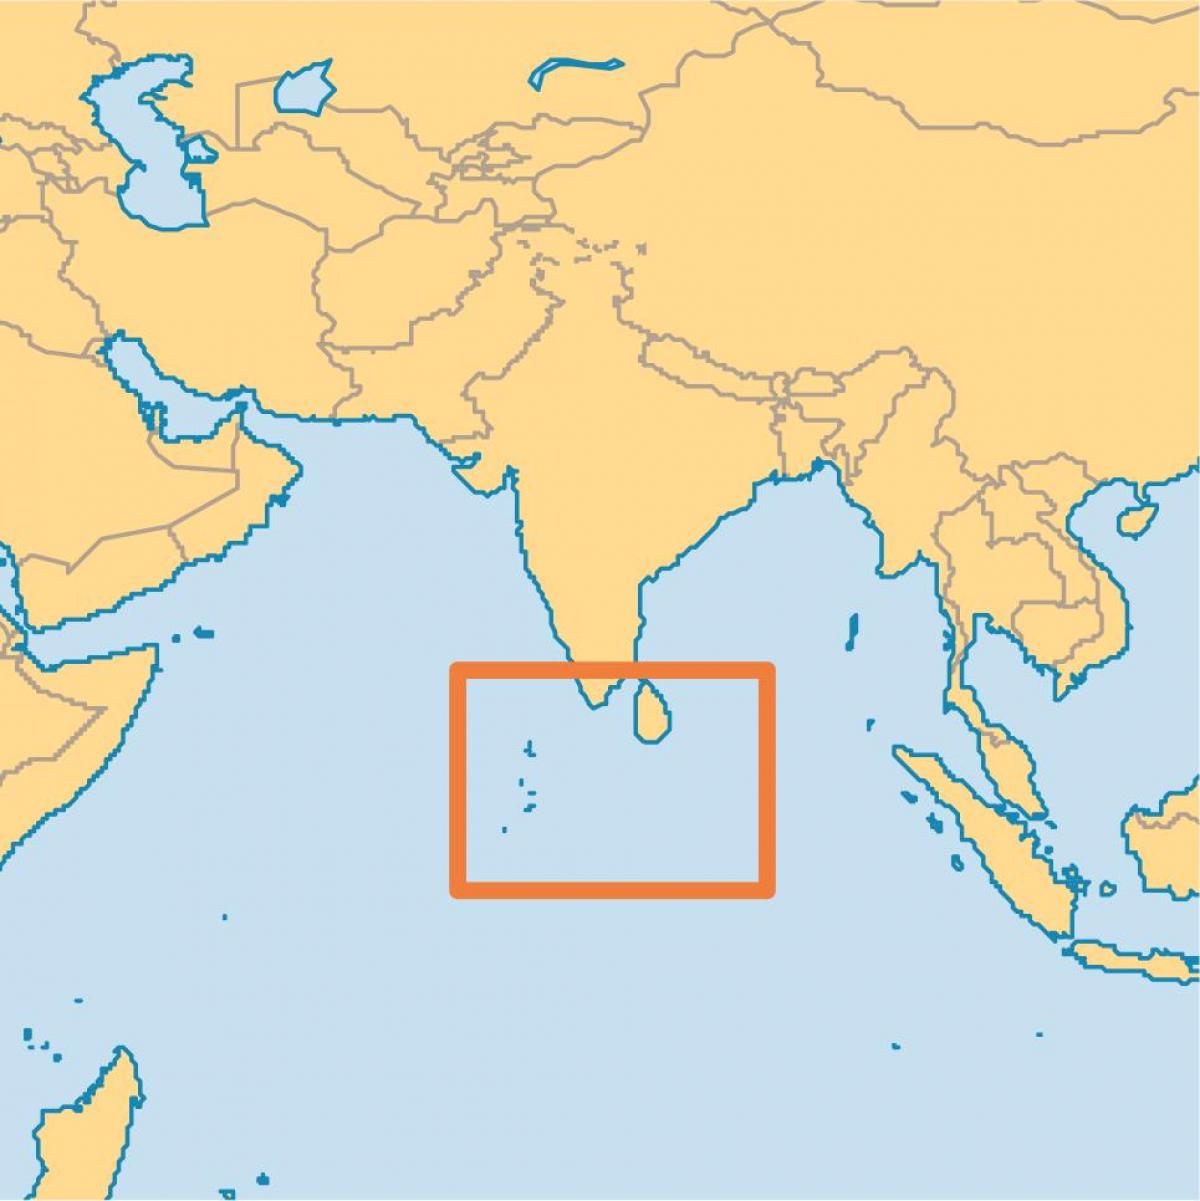 maldives island emplacement sur la carte du monde